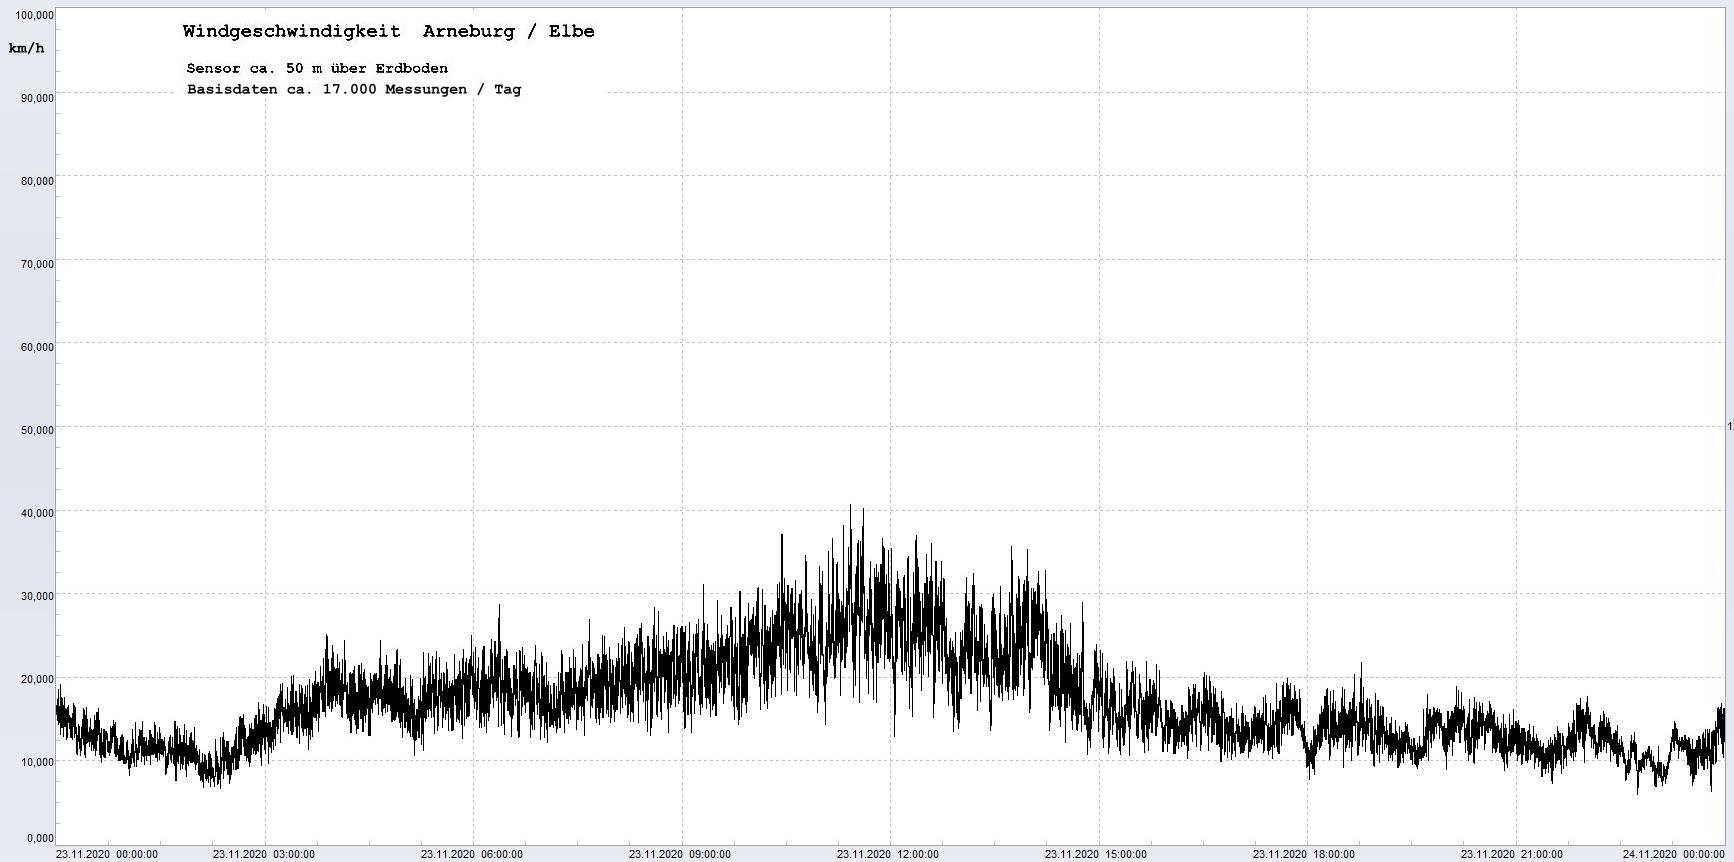 Arneburg Winddaten 23.11.2020, 
  Sensor auf Gebude, ca. 50 m ber Erdboden, 5s-Aufzeichnung